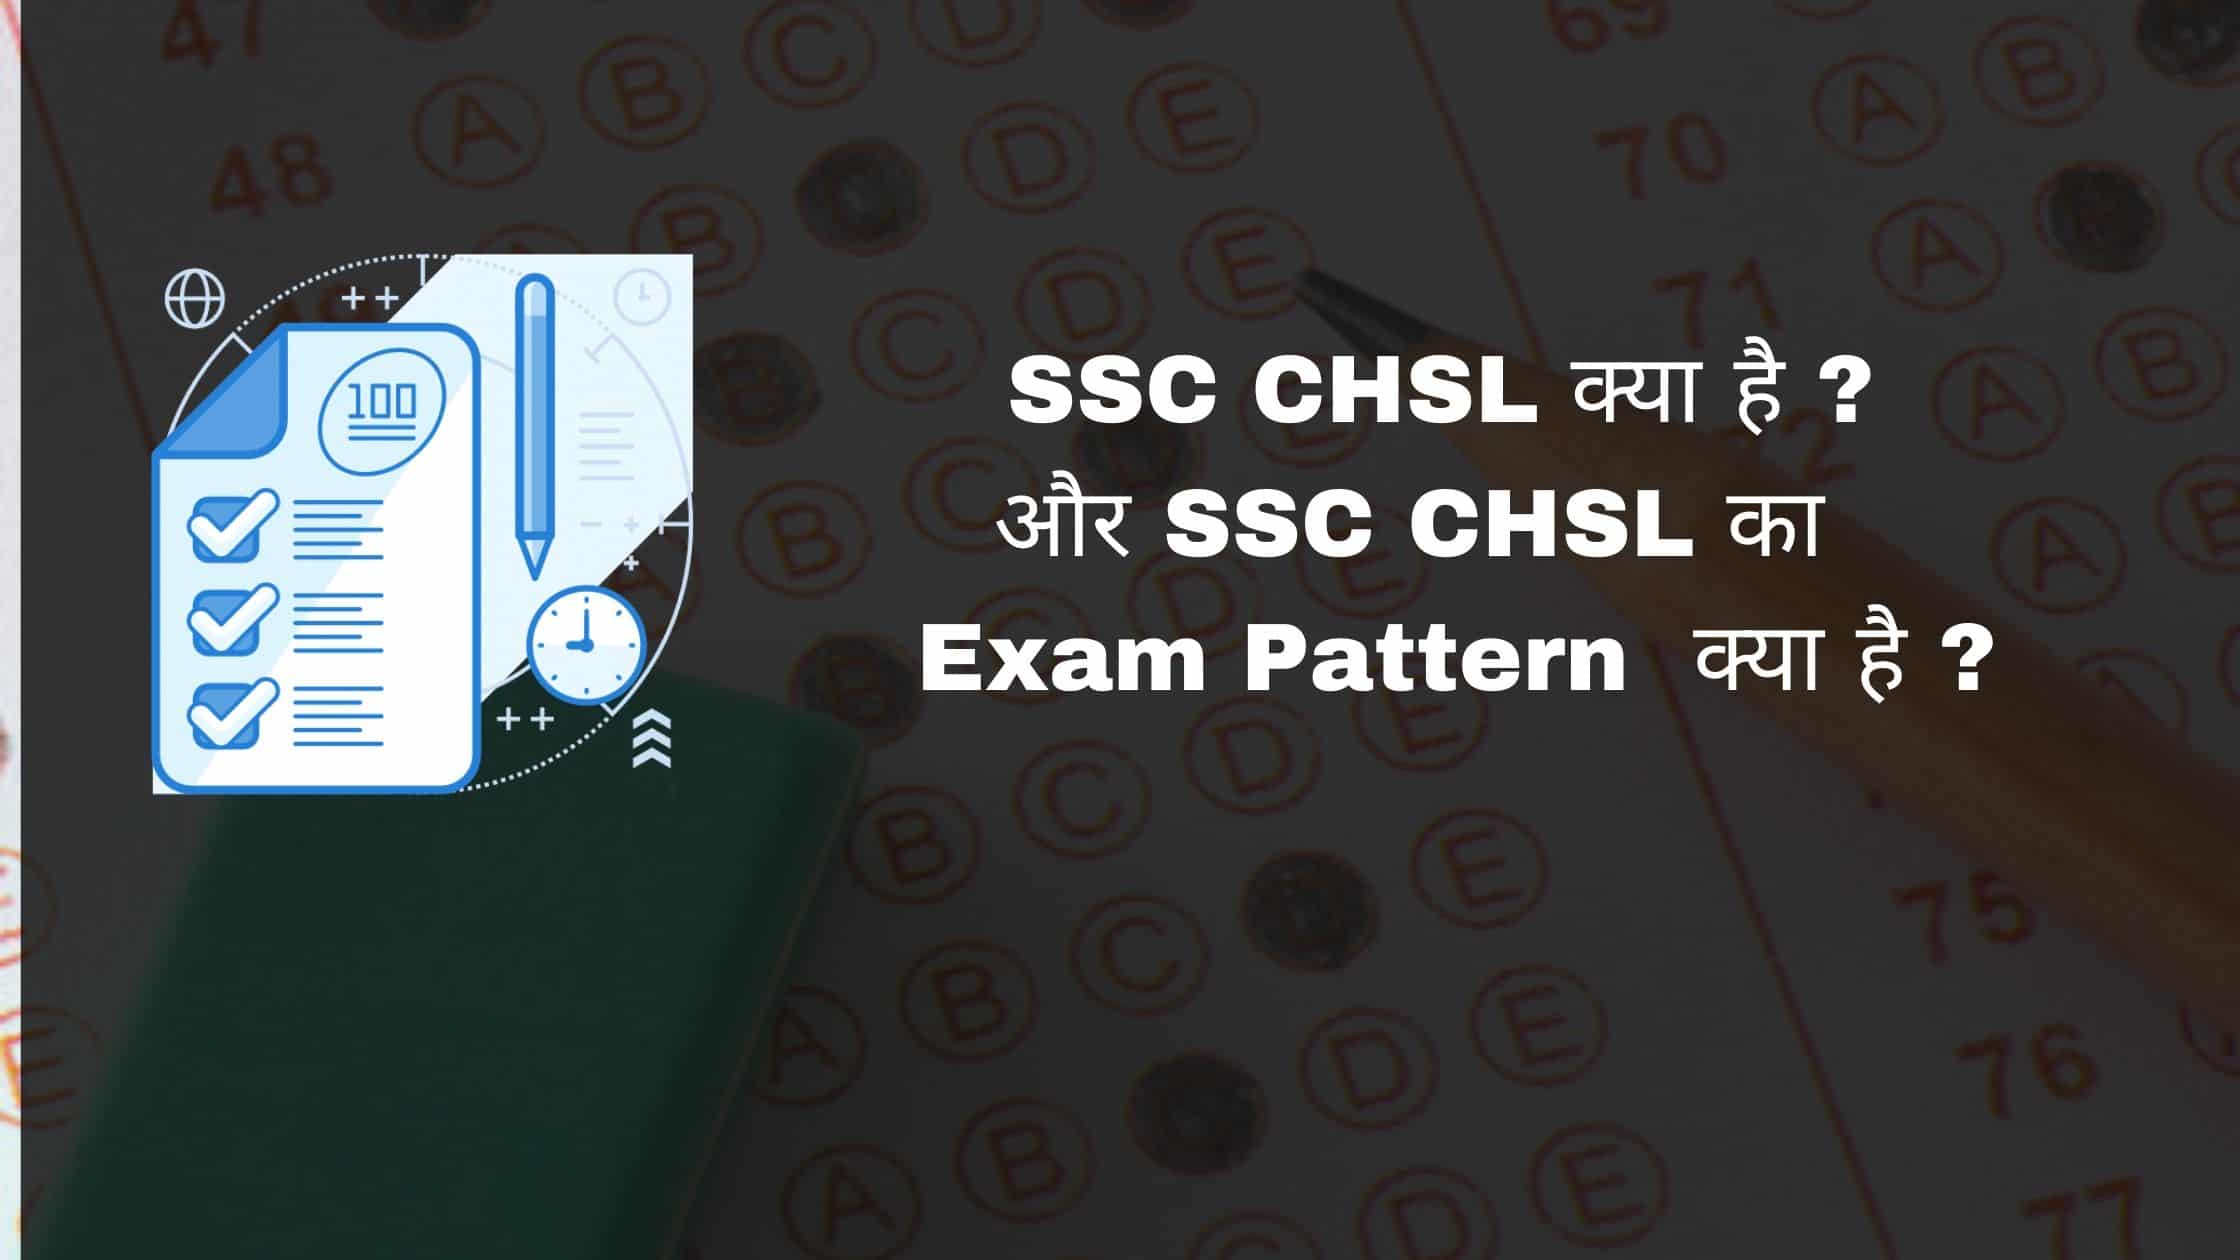 SSC CHSL क्या है ? और SSC CHSL का Exam Pattern क्या है ?